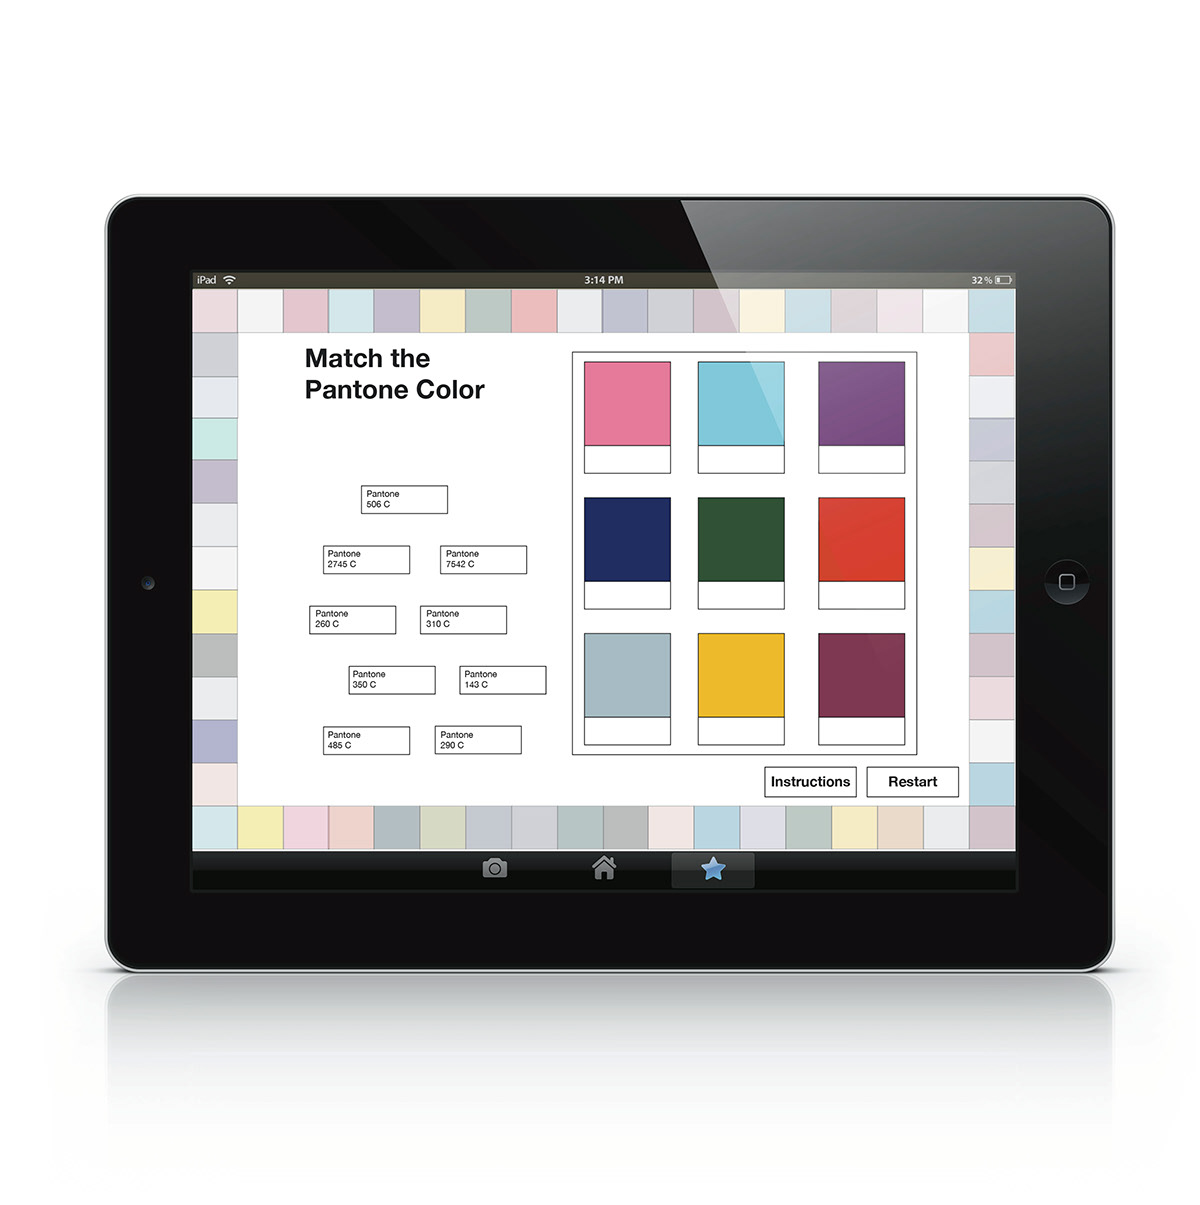 match game drag and drop pantone colors iPad Drag drop